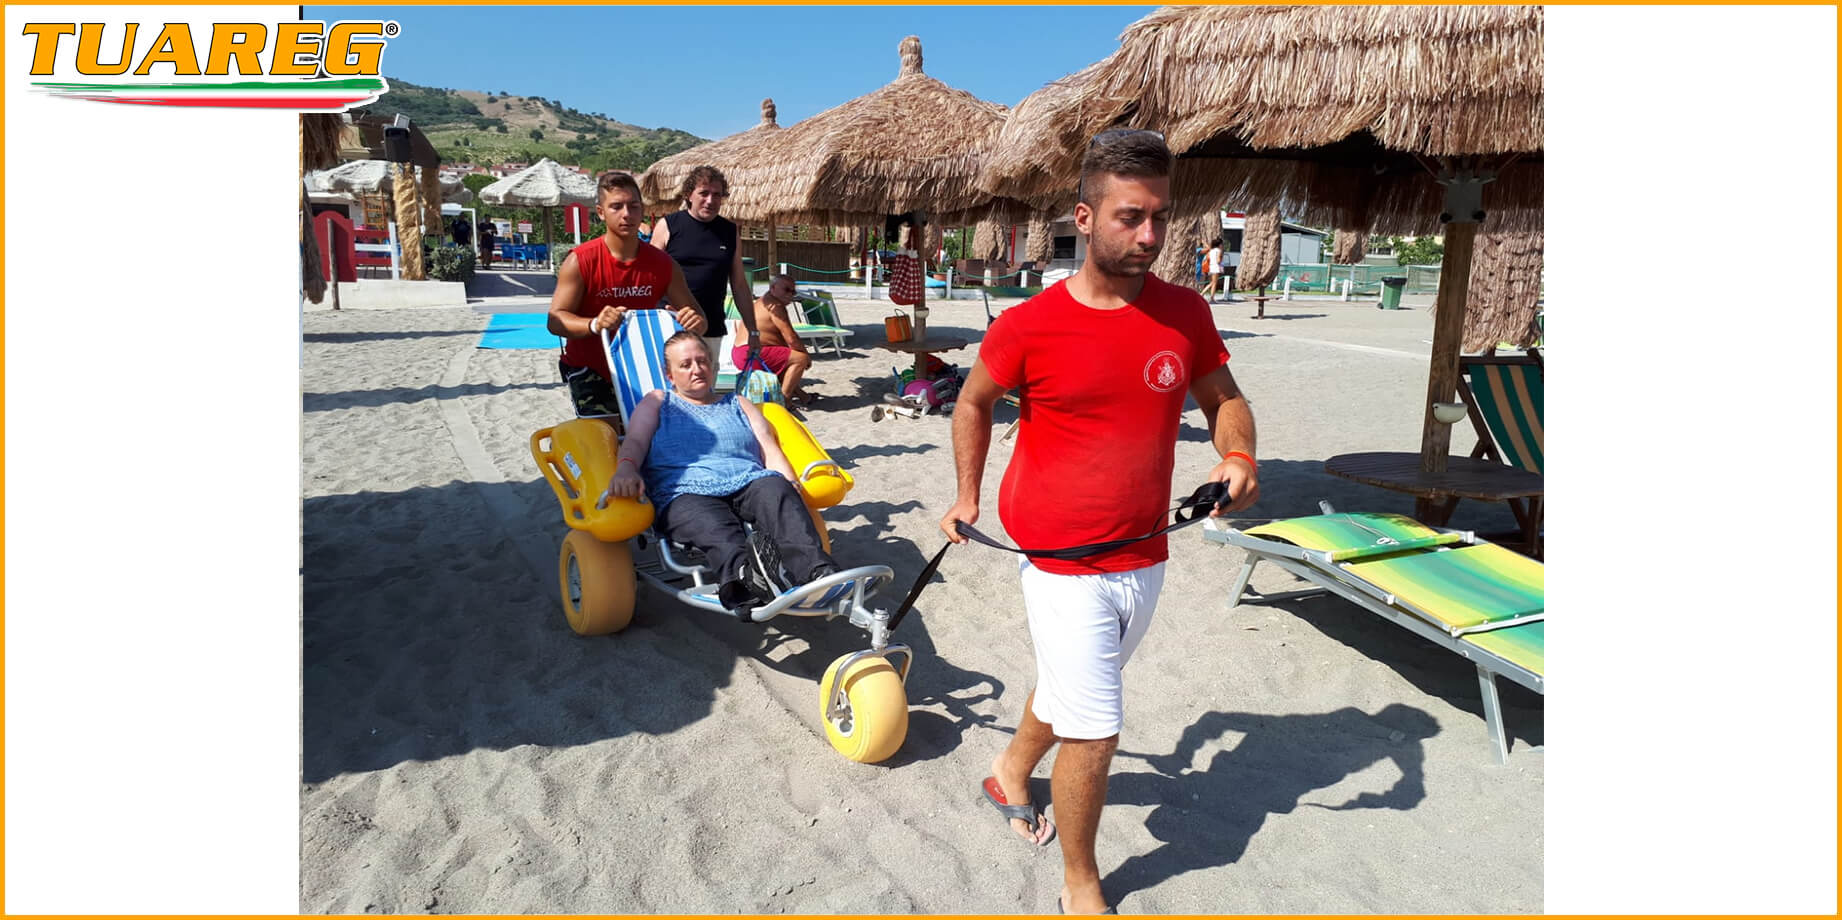 Sedia Galleggiante per Disabili da Spiaggia - Tuareg Access - Prodotto/Accessorio per l'Accessibilità delle Spiagge